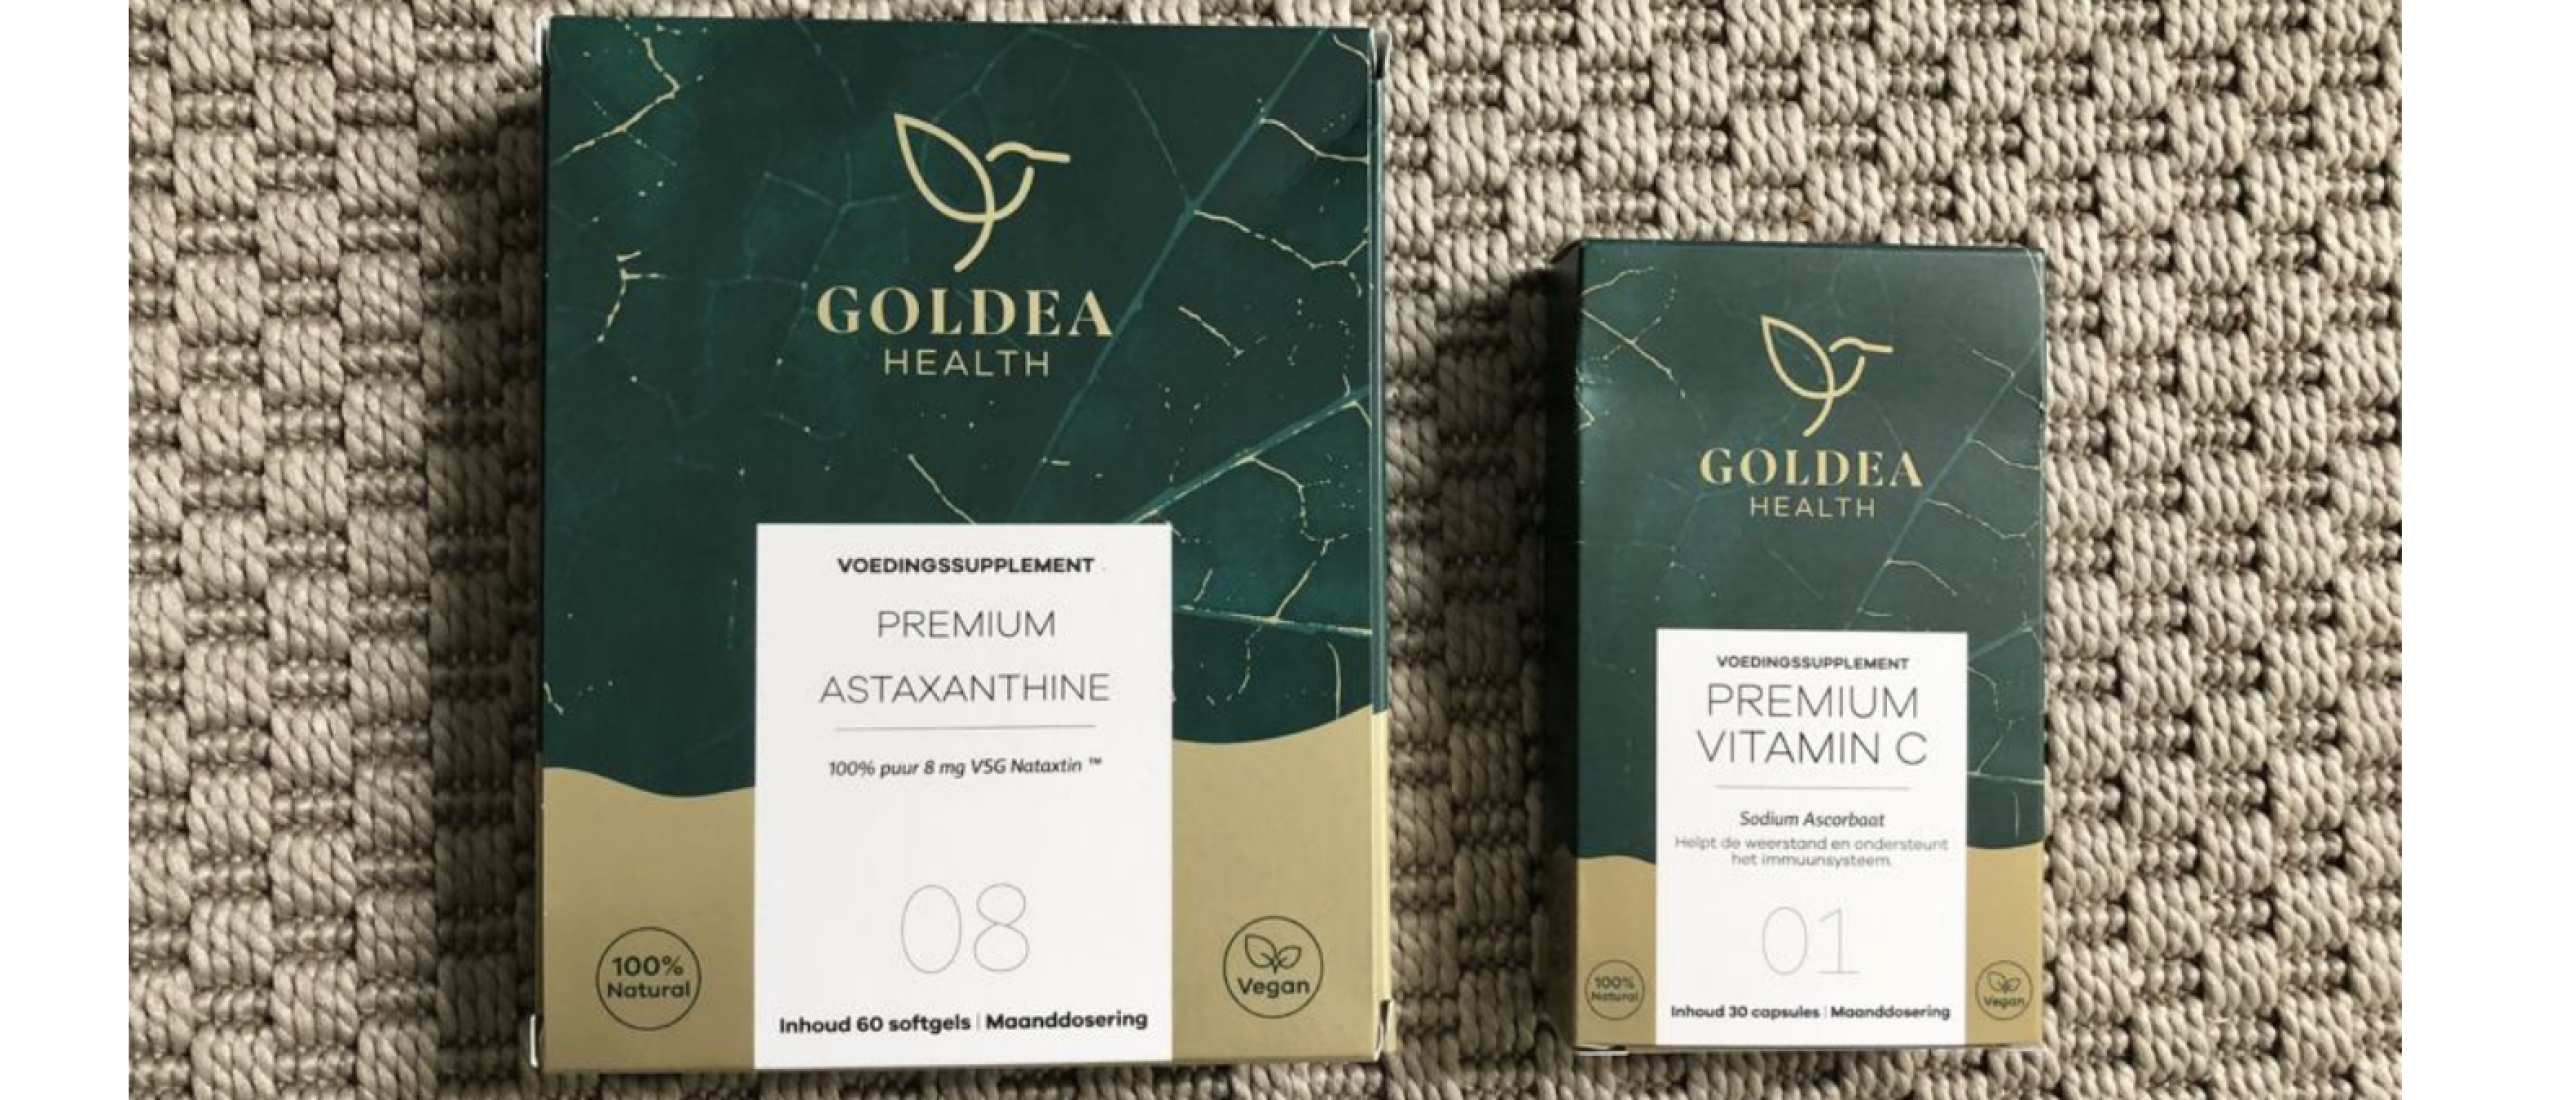 Review Goldea Health supplementen